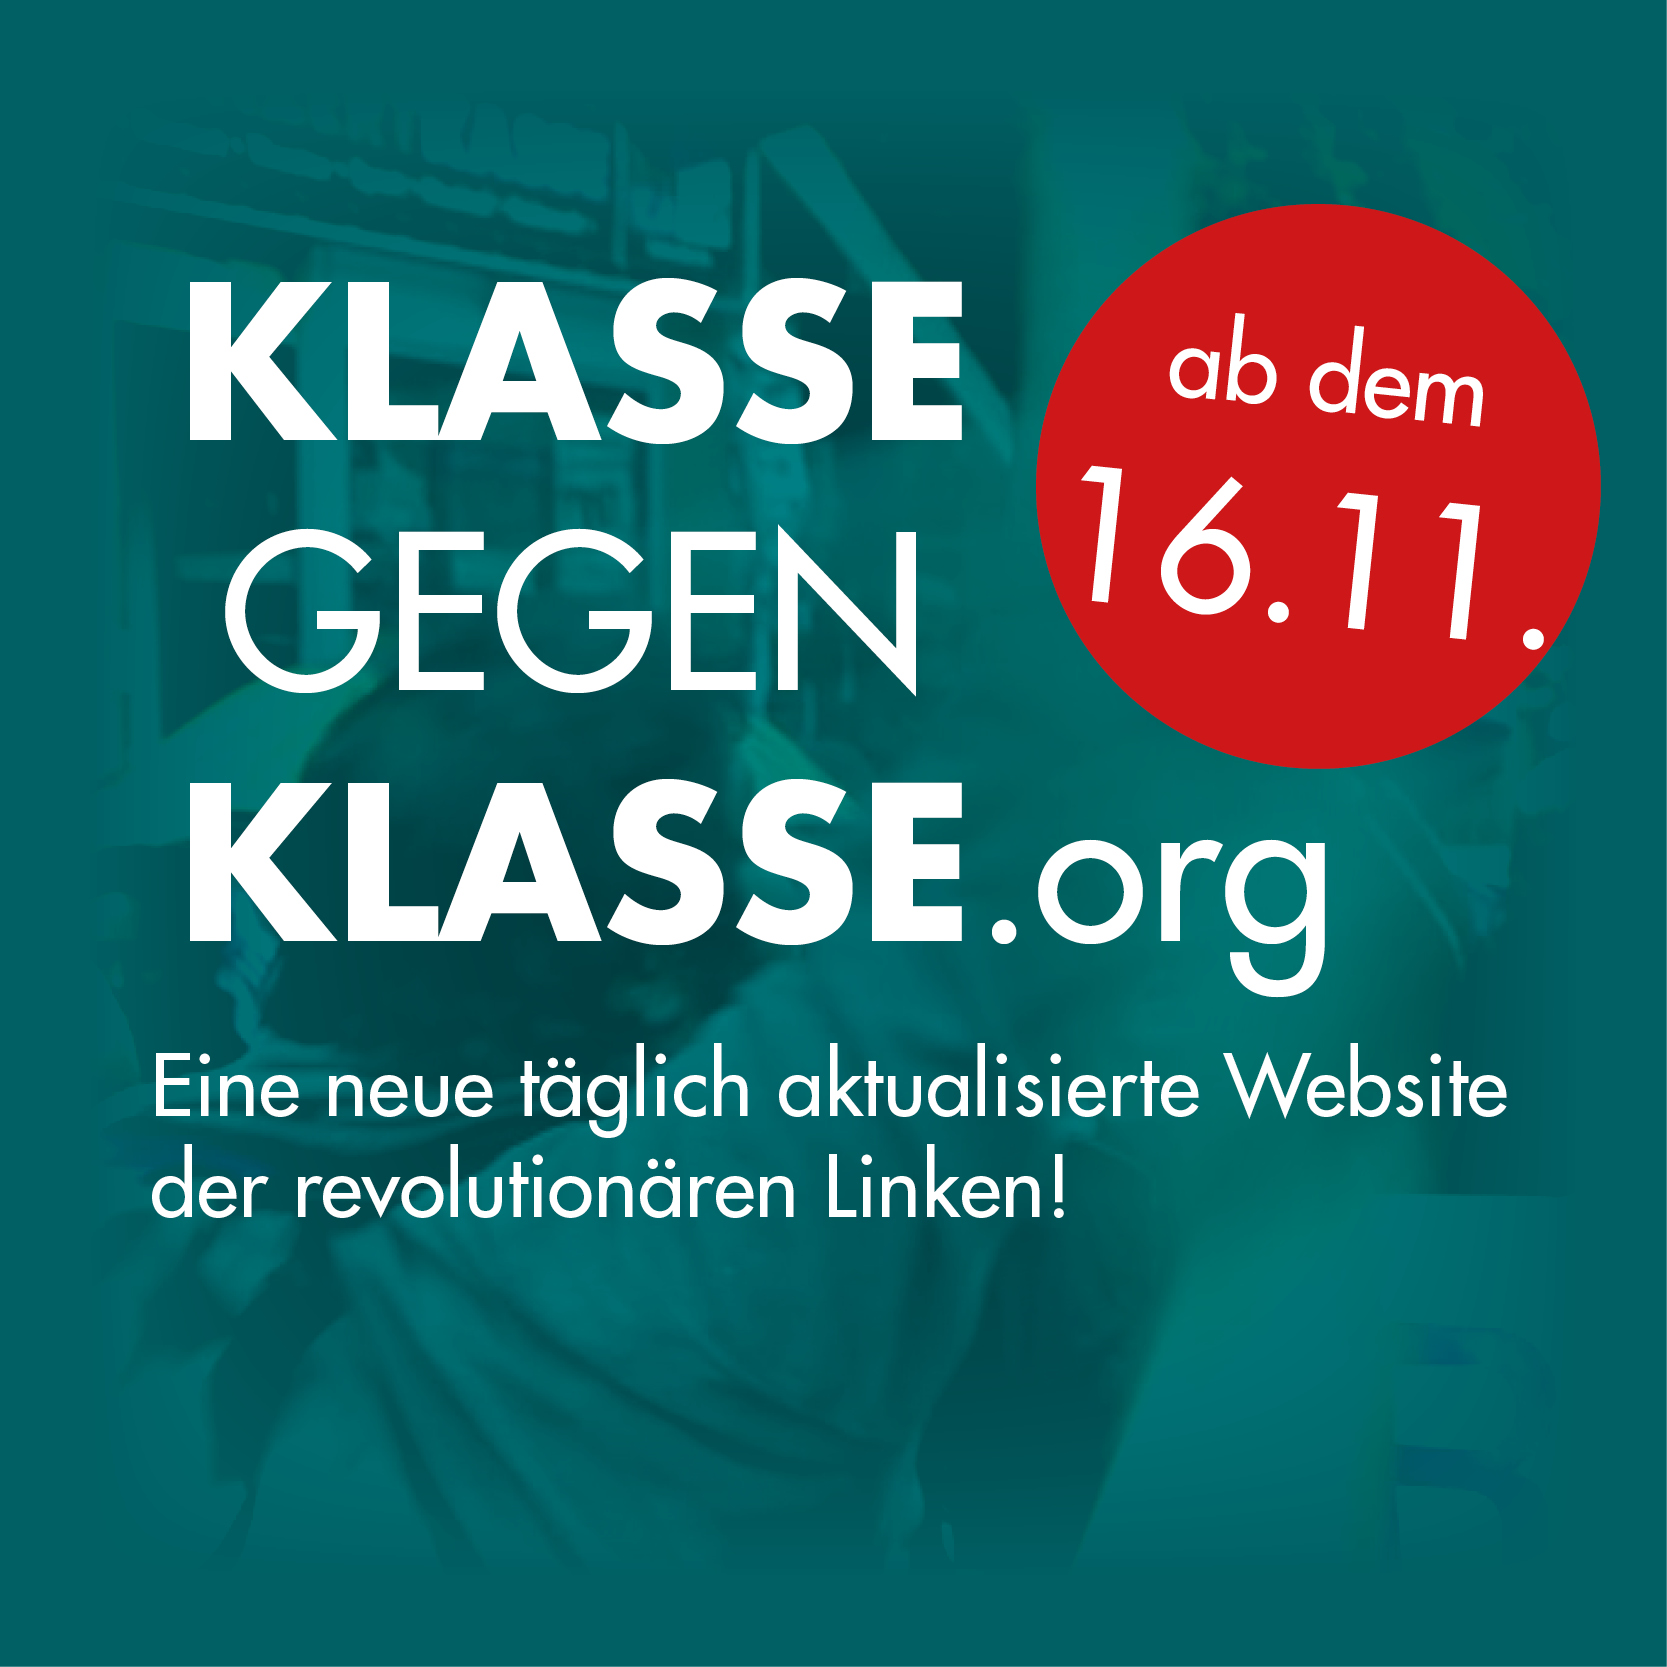 KLASSEGEGENKLASSE.ORG: Eine neue täglich aktualisierte Website der revolutionären Linken!